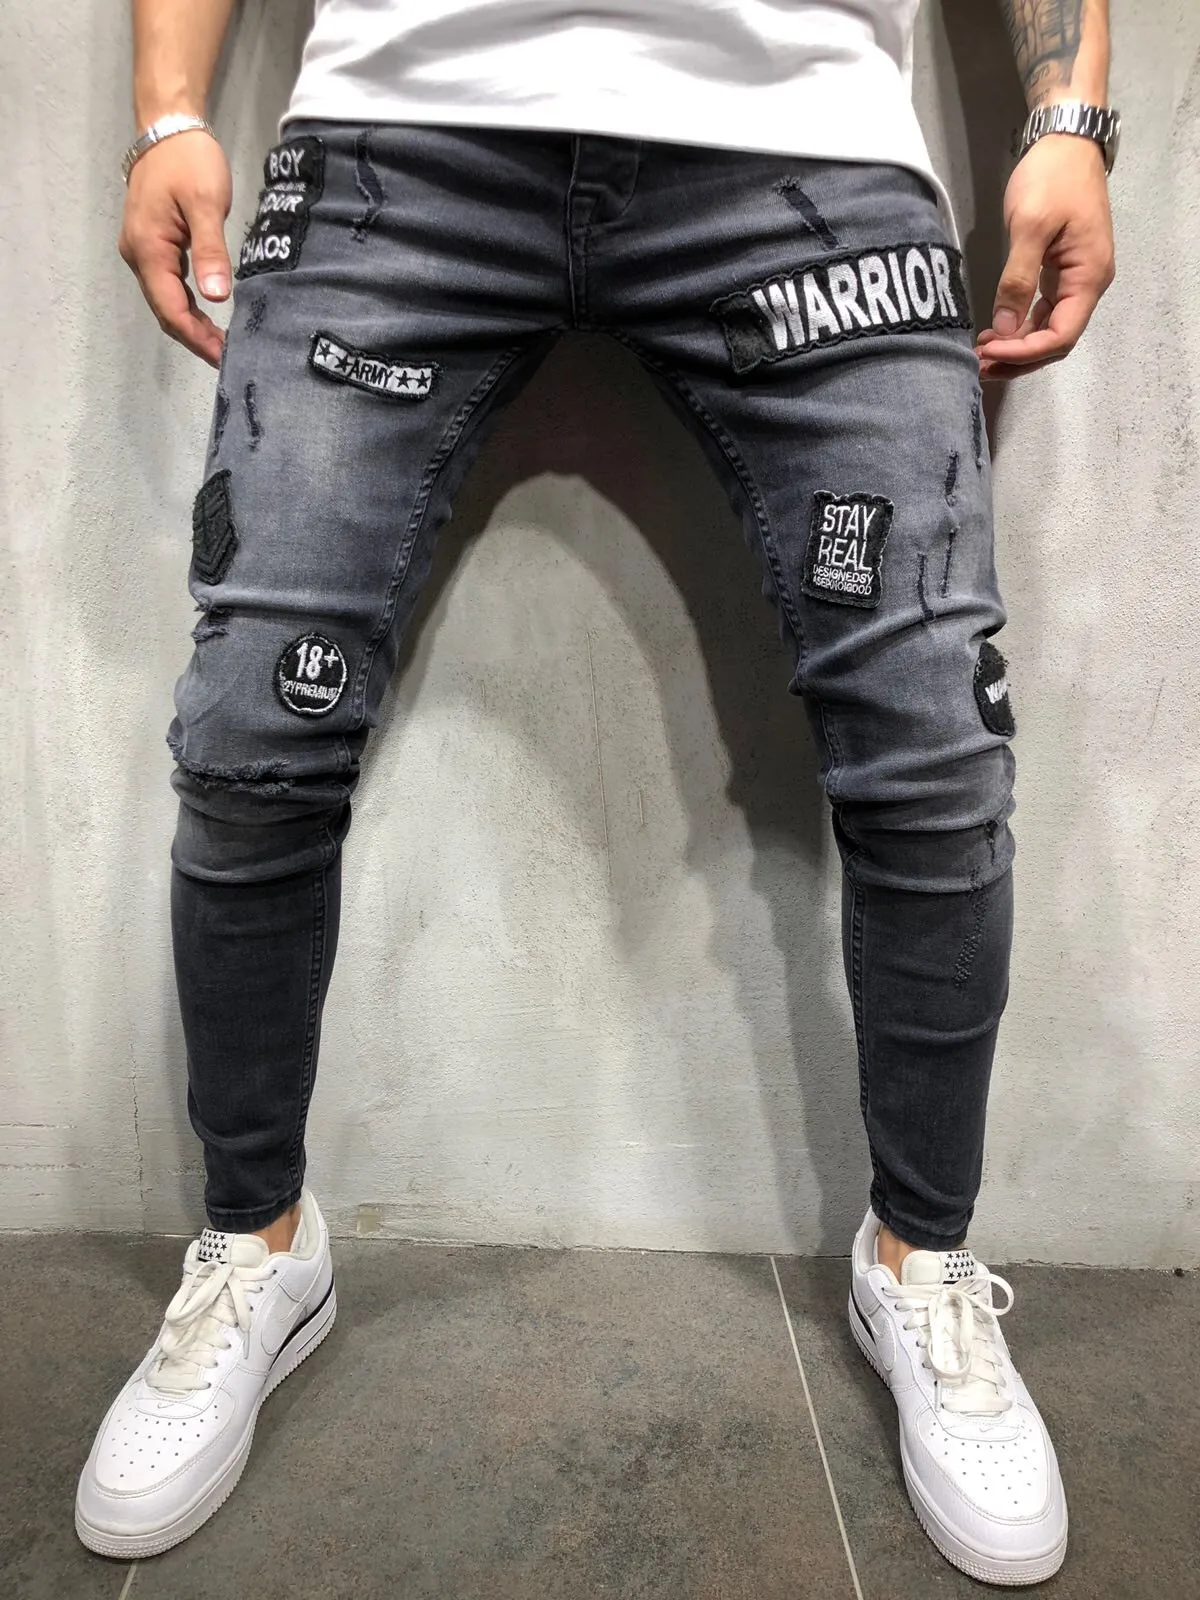 Высокое качество для мужчин Эластичные Обтягивающие джинсы морщин в колено хип хоп байкерские брюки для девочек бедра лодыжки молни